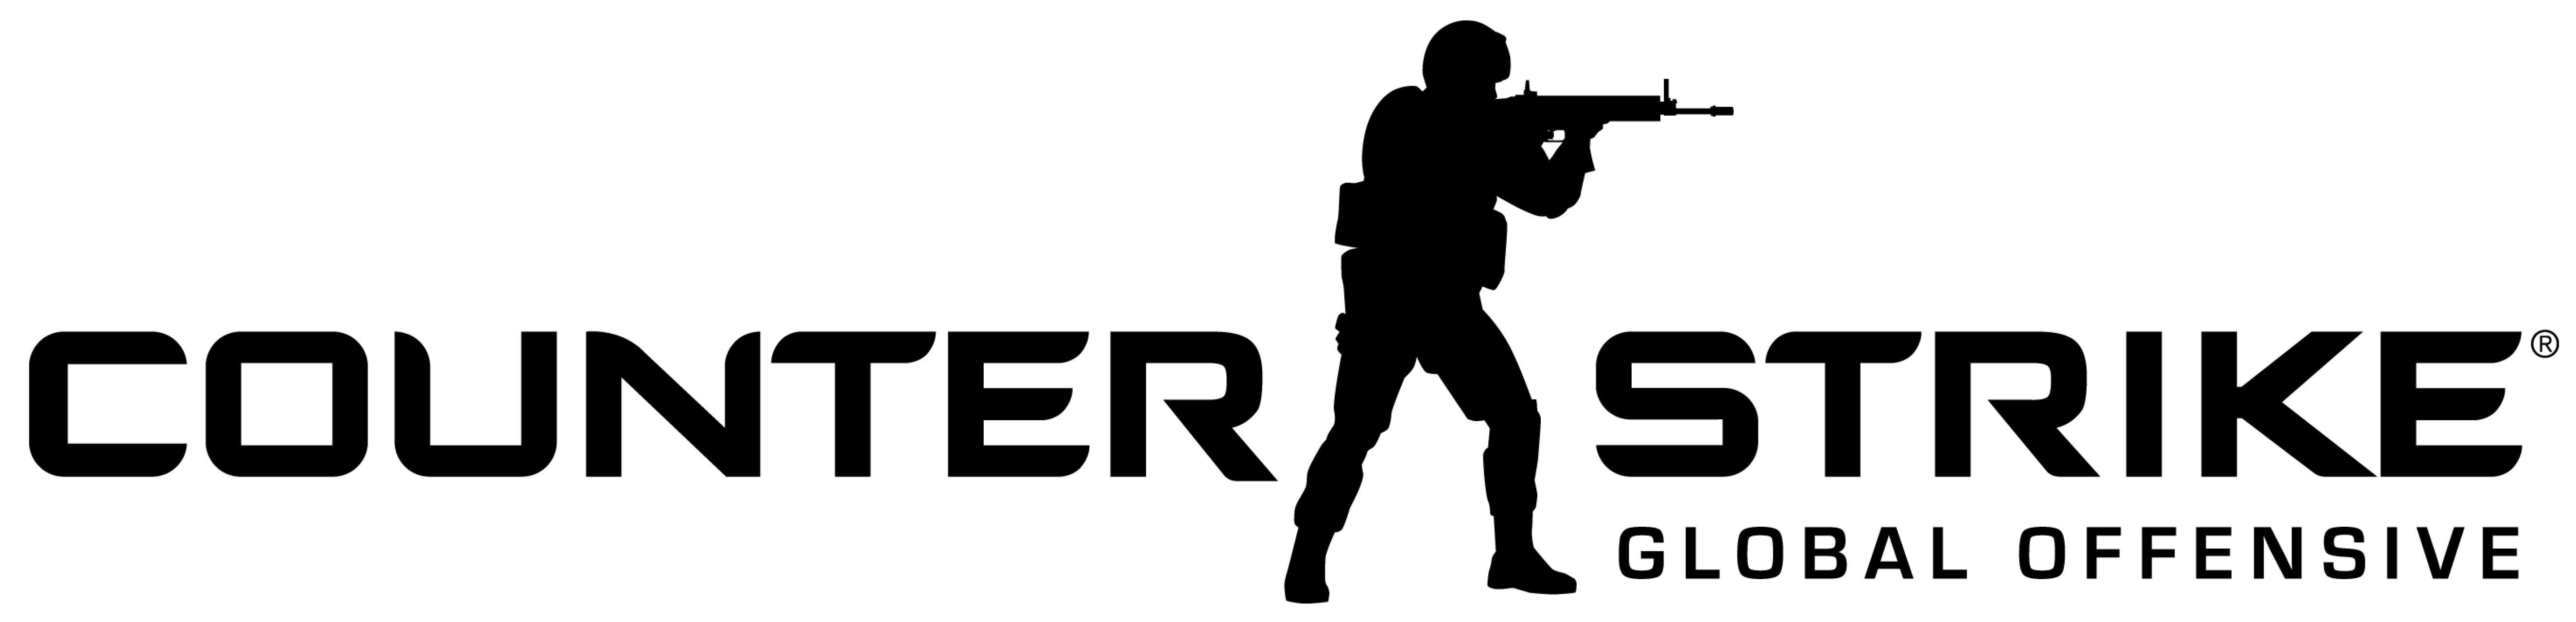 Counter Strike logo emblem symbol Global Offensive